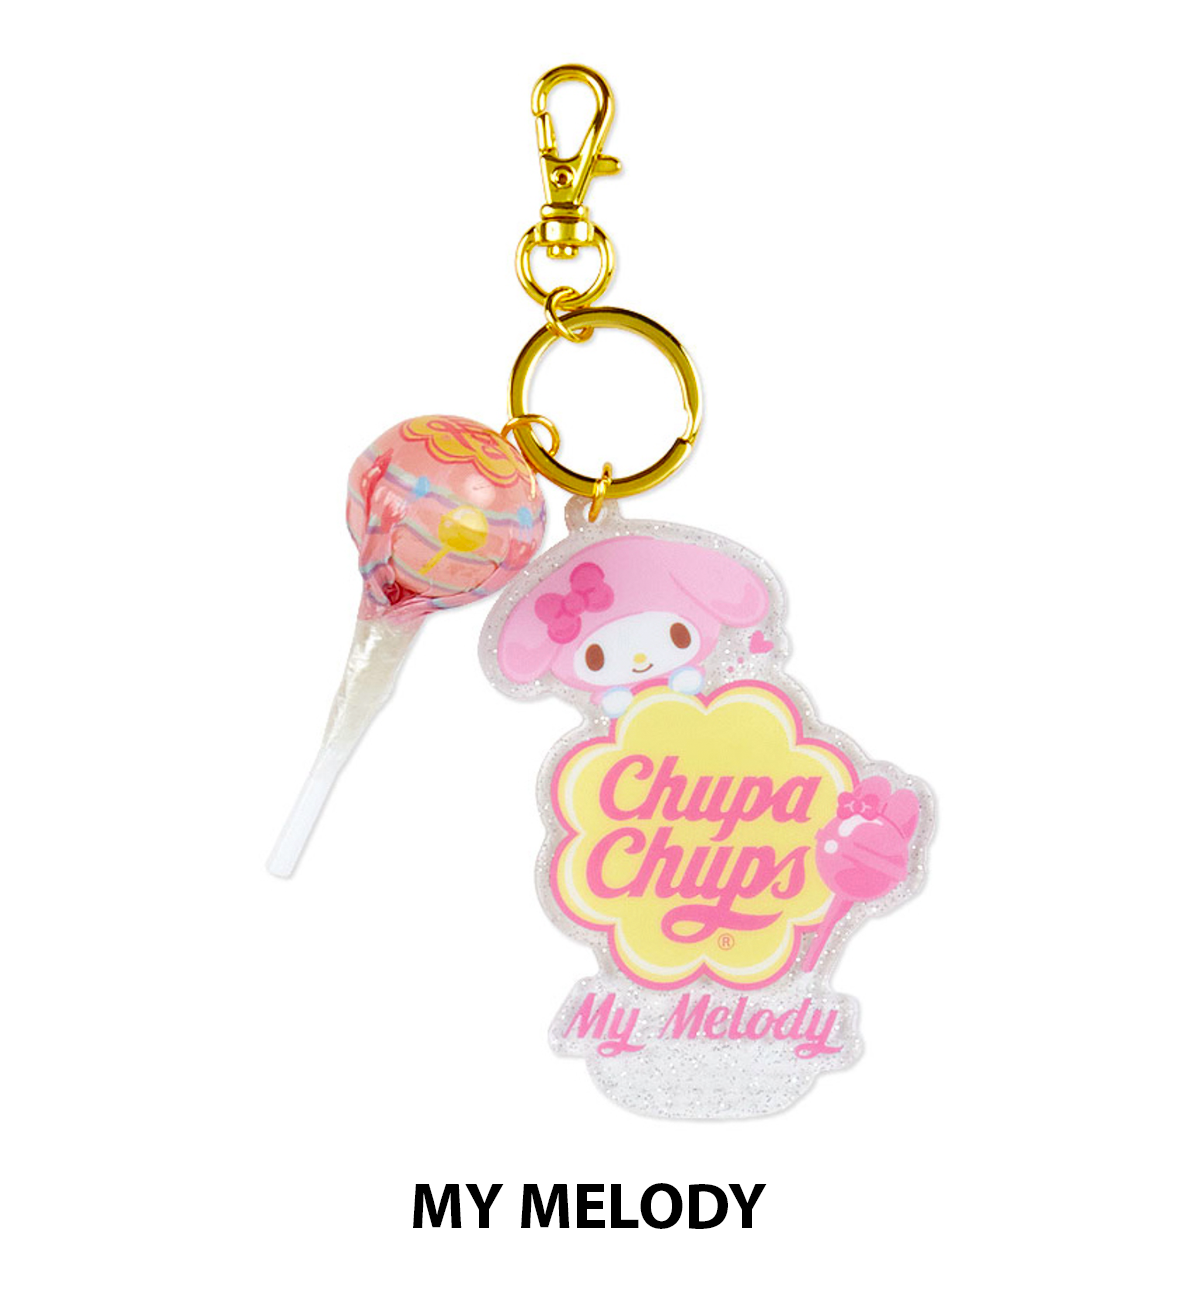 Sanrio Characters & Chupa Chups Acrylic Keyring [Limited Edition]